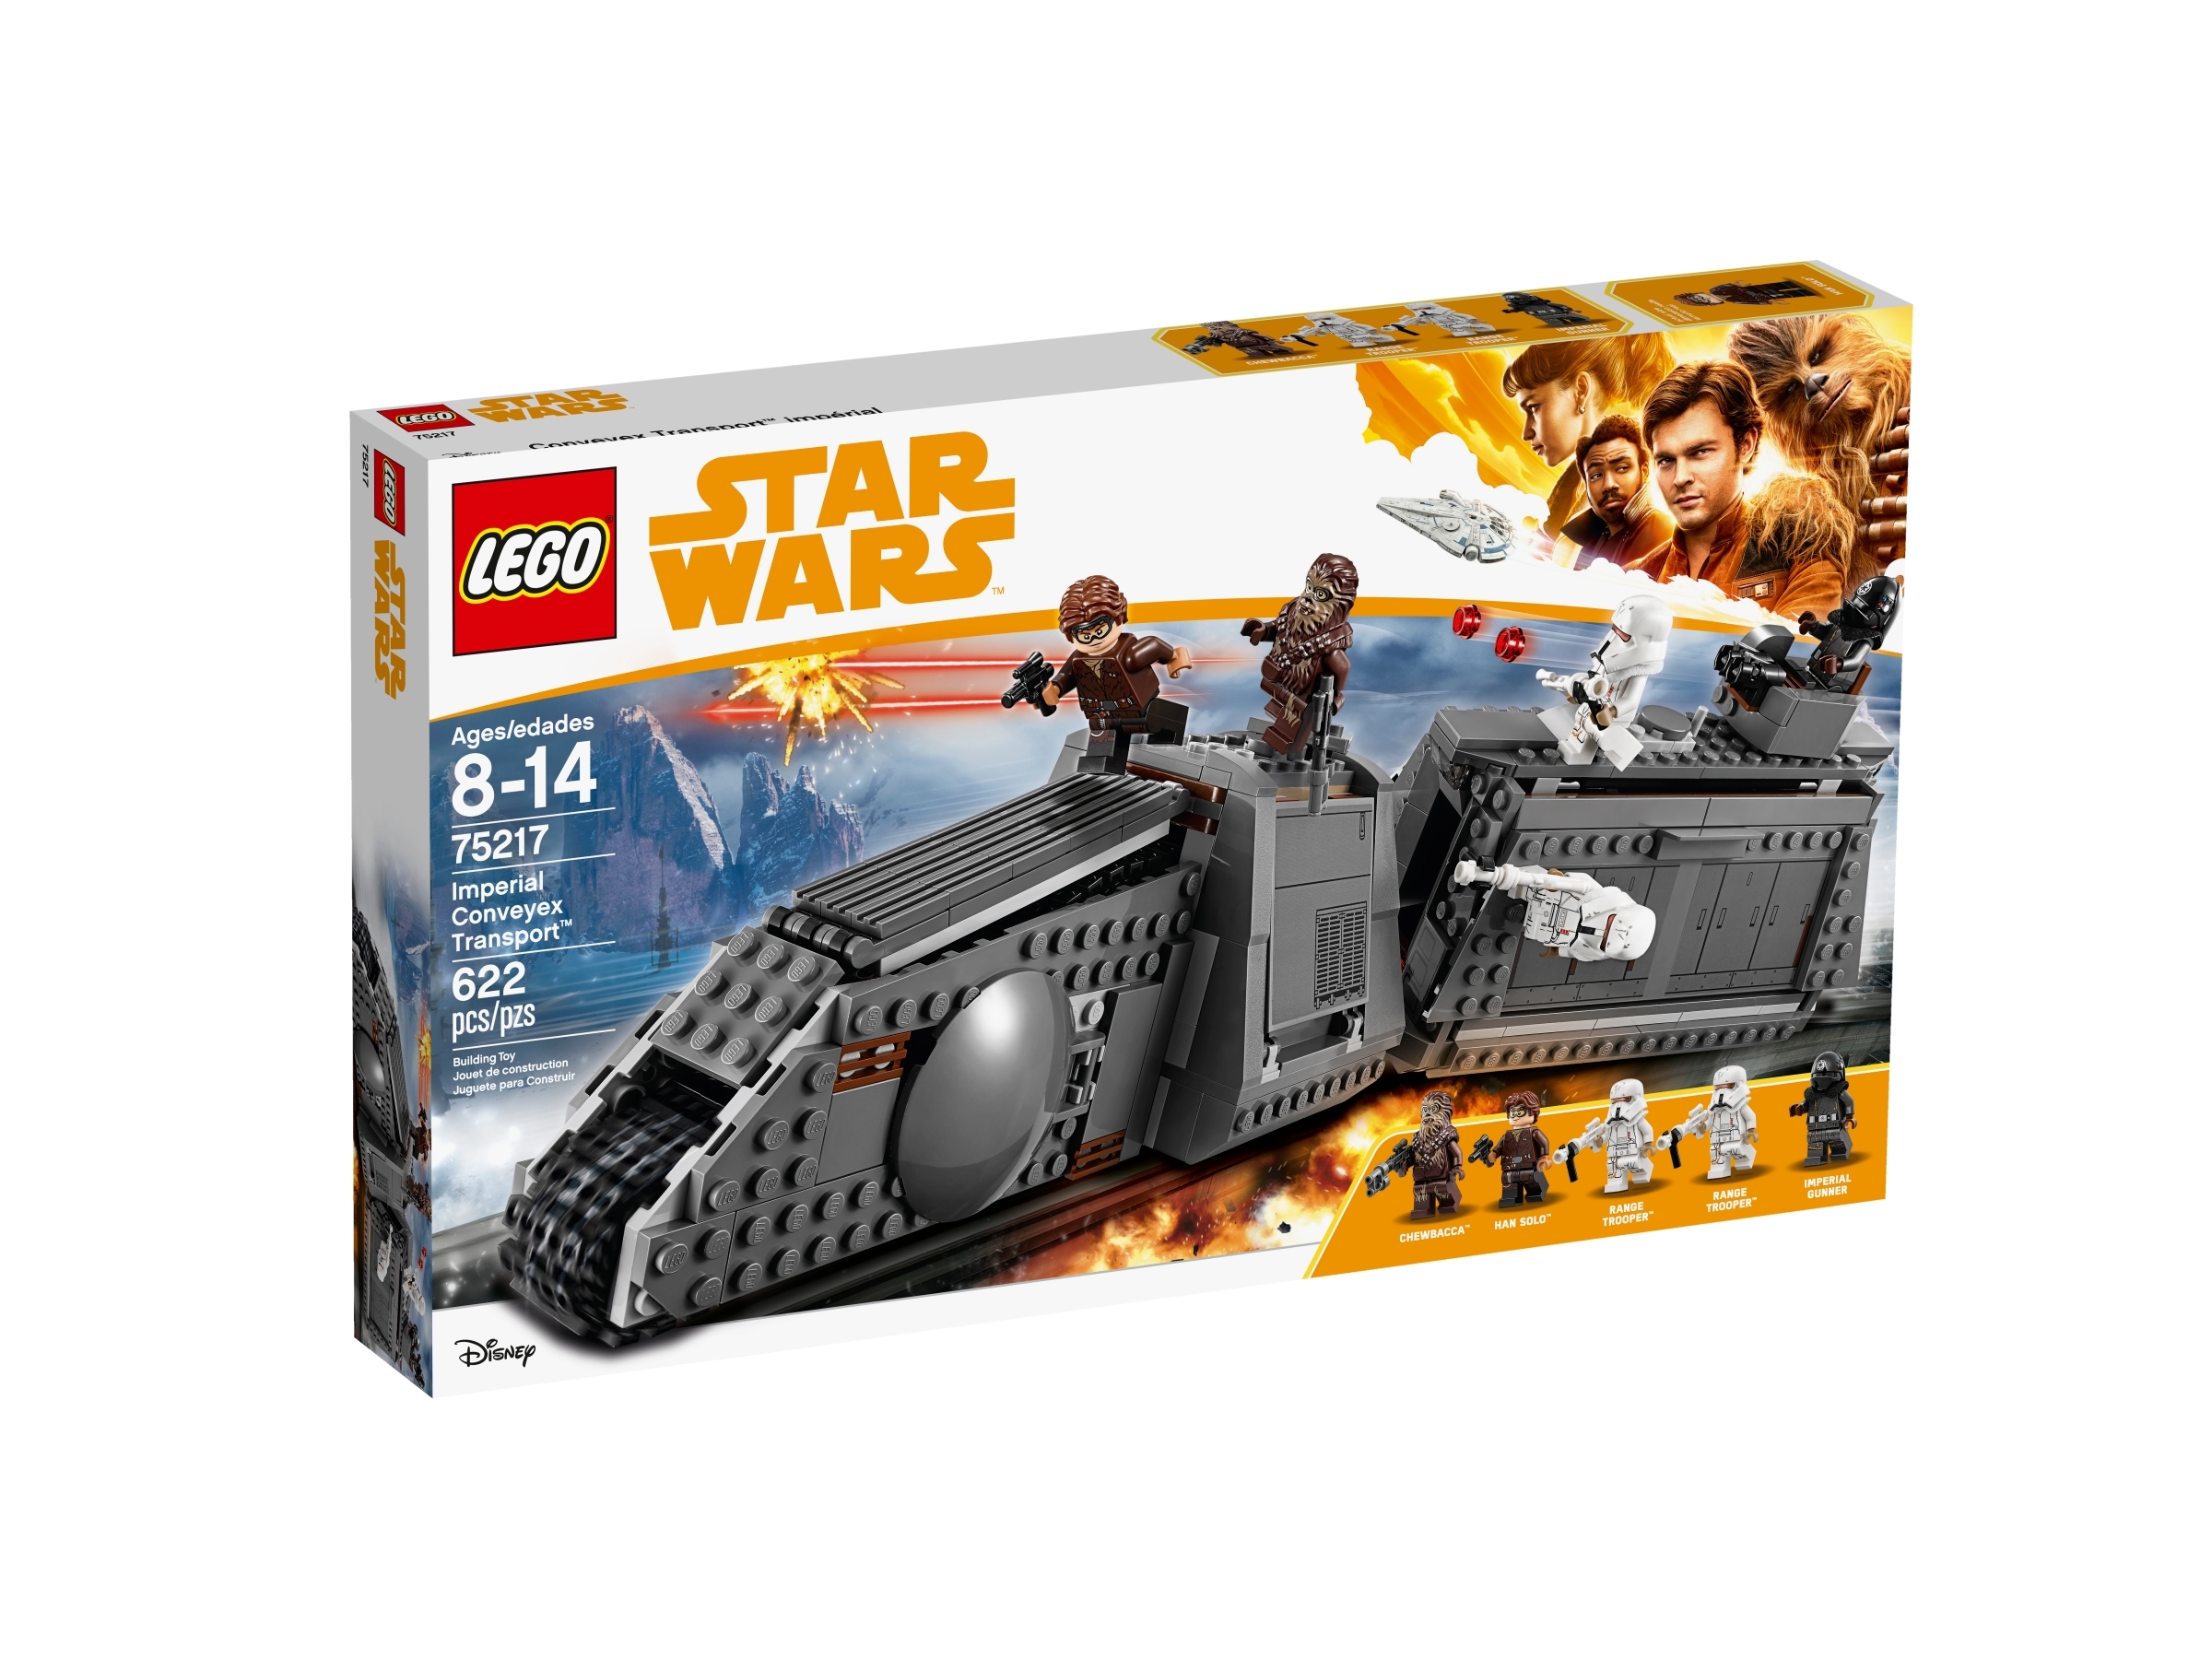 LEGO 50 x BEIGE/TAN BASE/PLATE/BOARD BRICK 4x4 PIN  ID 3031 CITY-STAR WARS-MOVIE